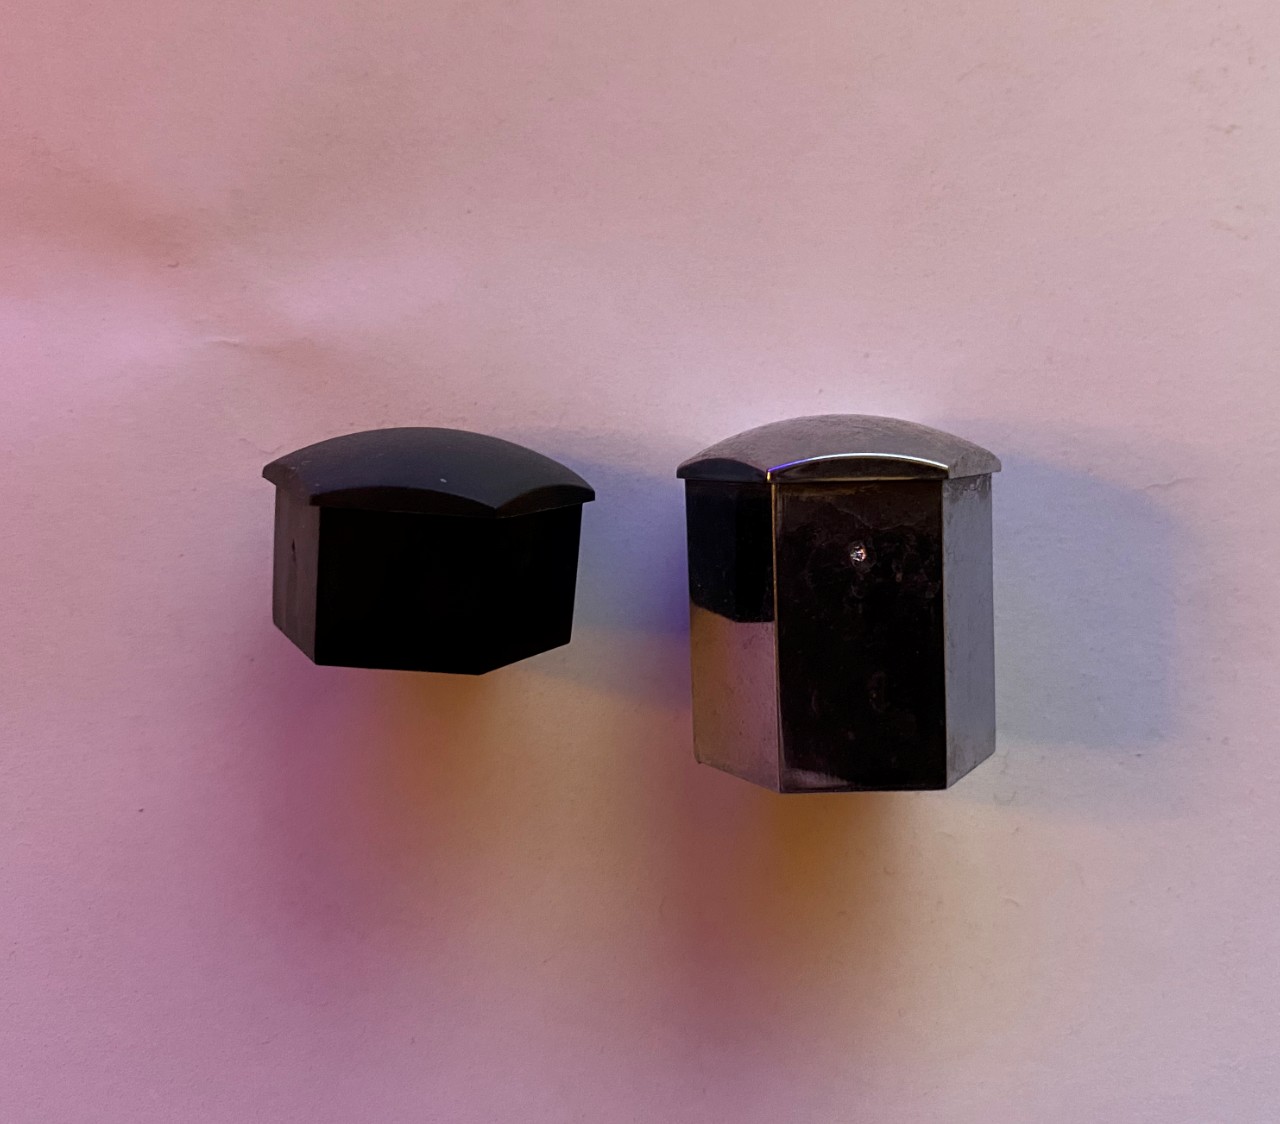 Model 3 (left) vs. Model X lug nut covers